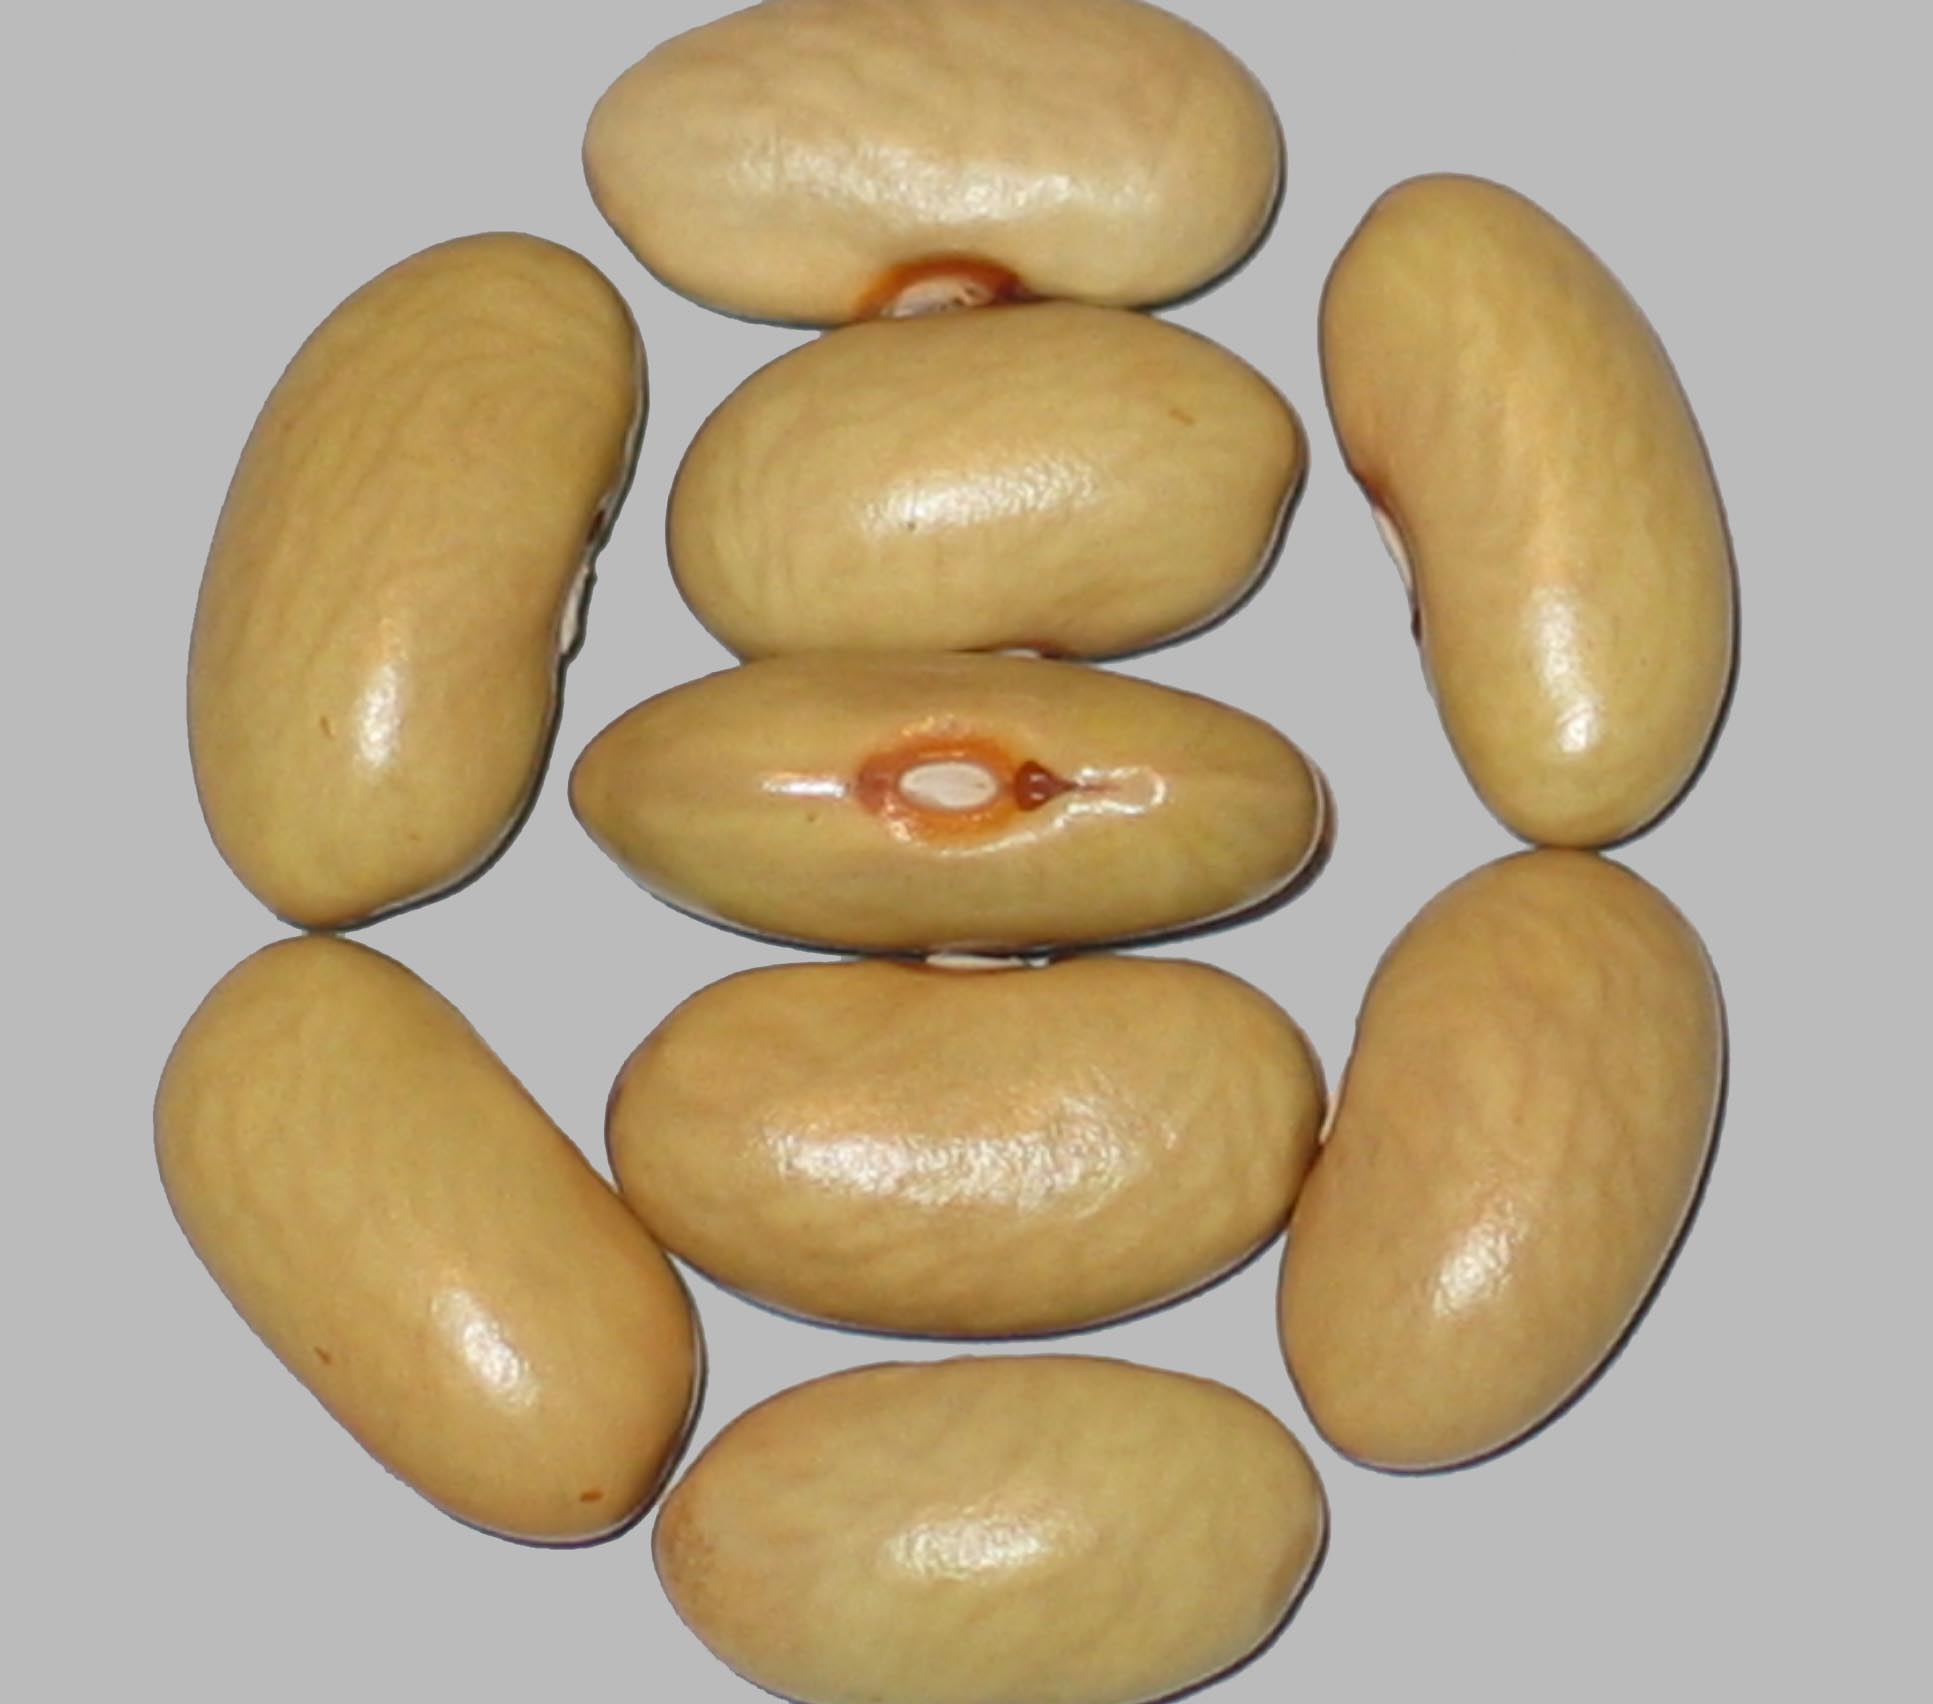 image of Schwarz Valder Aus Machbonne beans